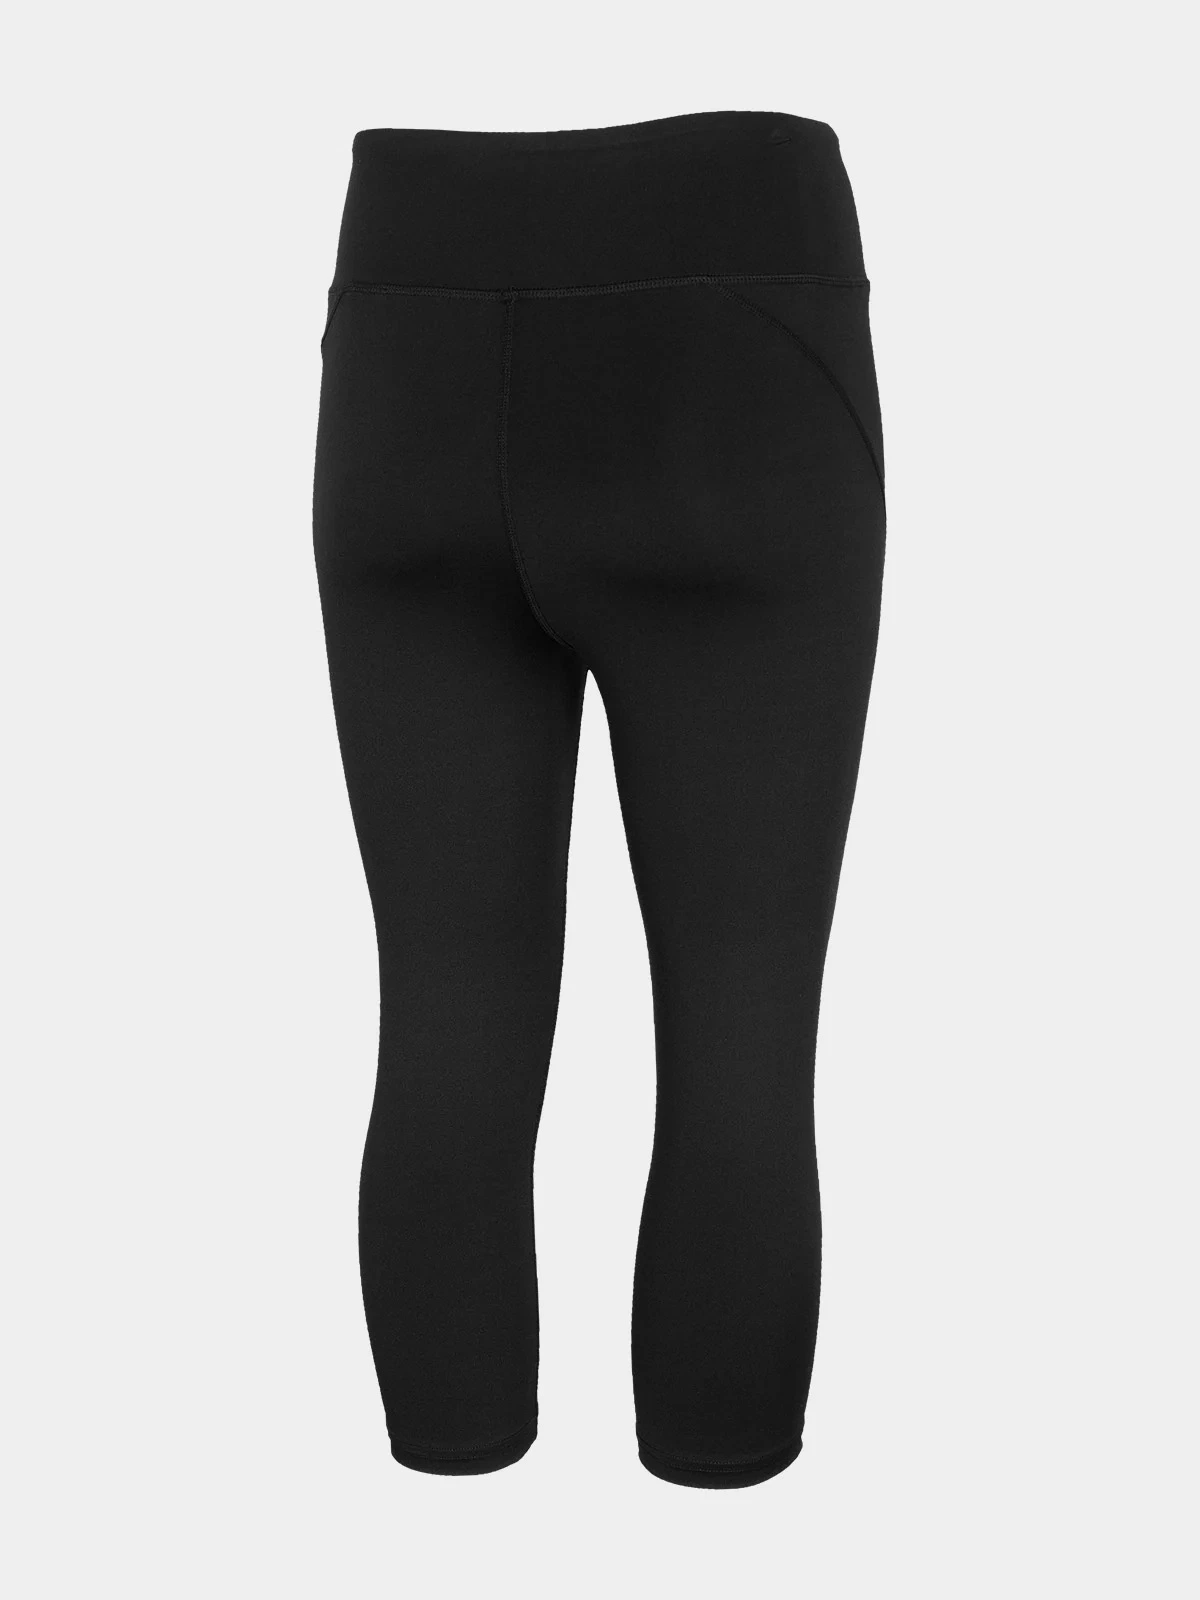 Sexy ropa de punto Gimnasio Ribbed Yoga conjunto para la mujer, 2 piezas de Actiwear Deportes Sujetador con Control de Tummy pantalones cortos